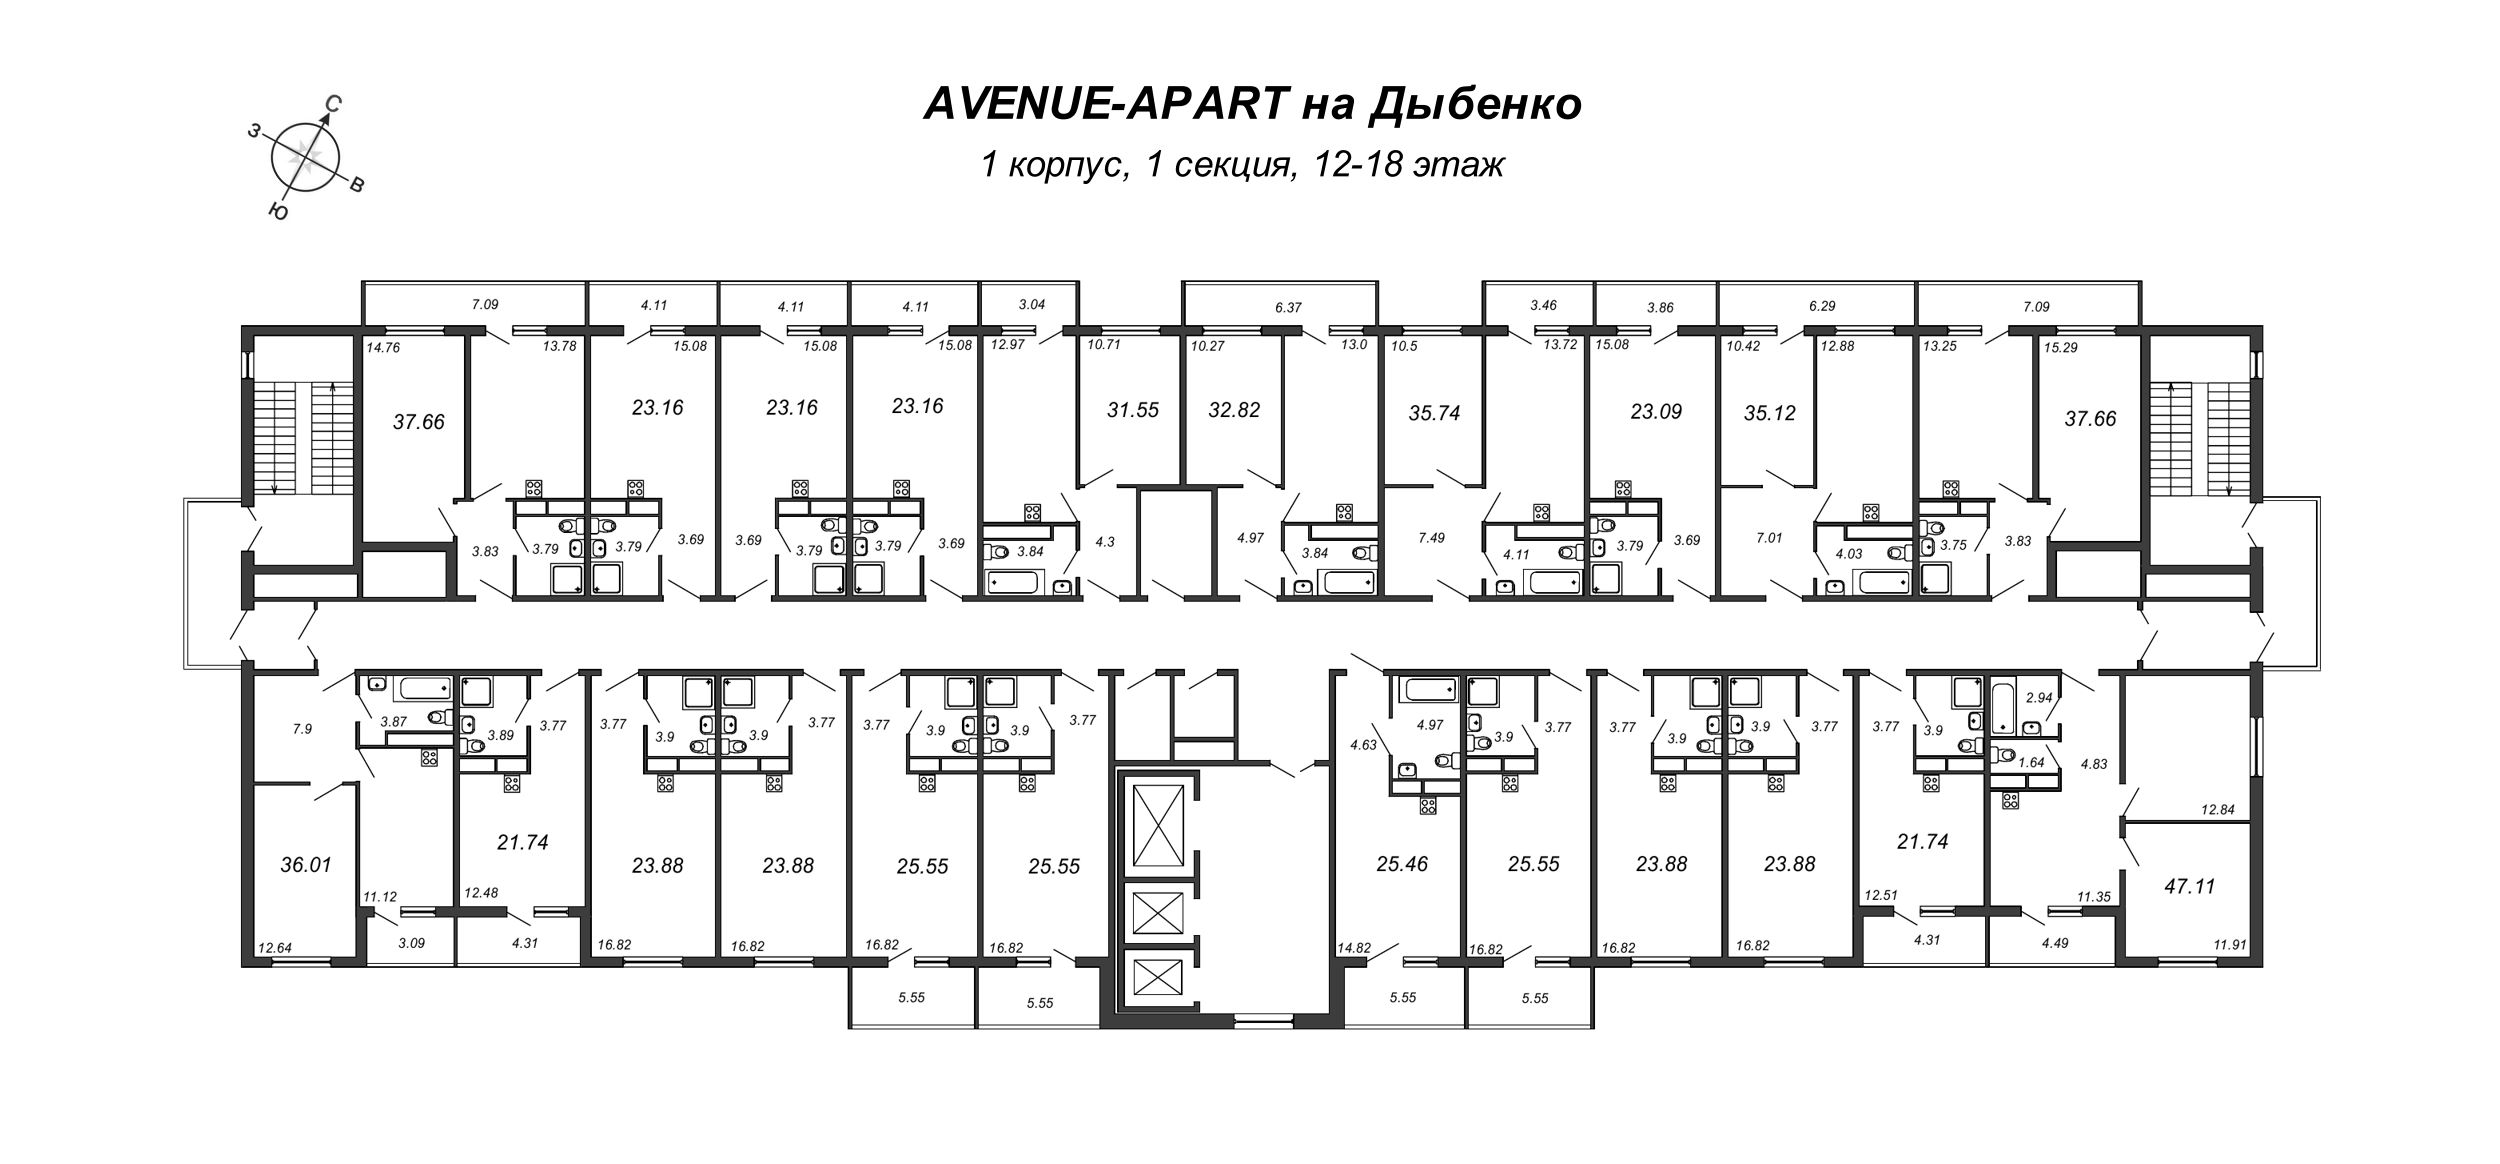 Квартира-студия, 23.72 м² в ЖК "Avenue-Apart на Дыбенко" - планировка этажа